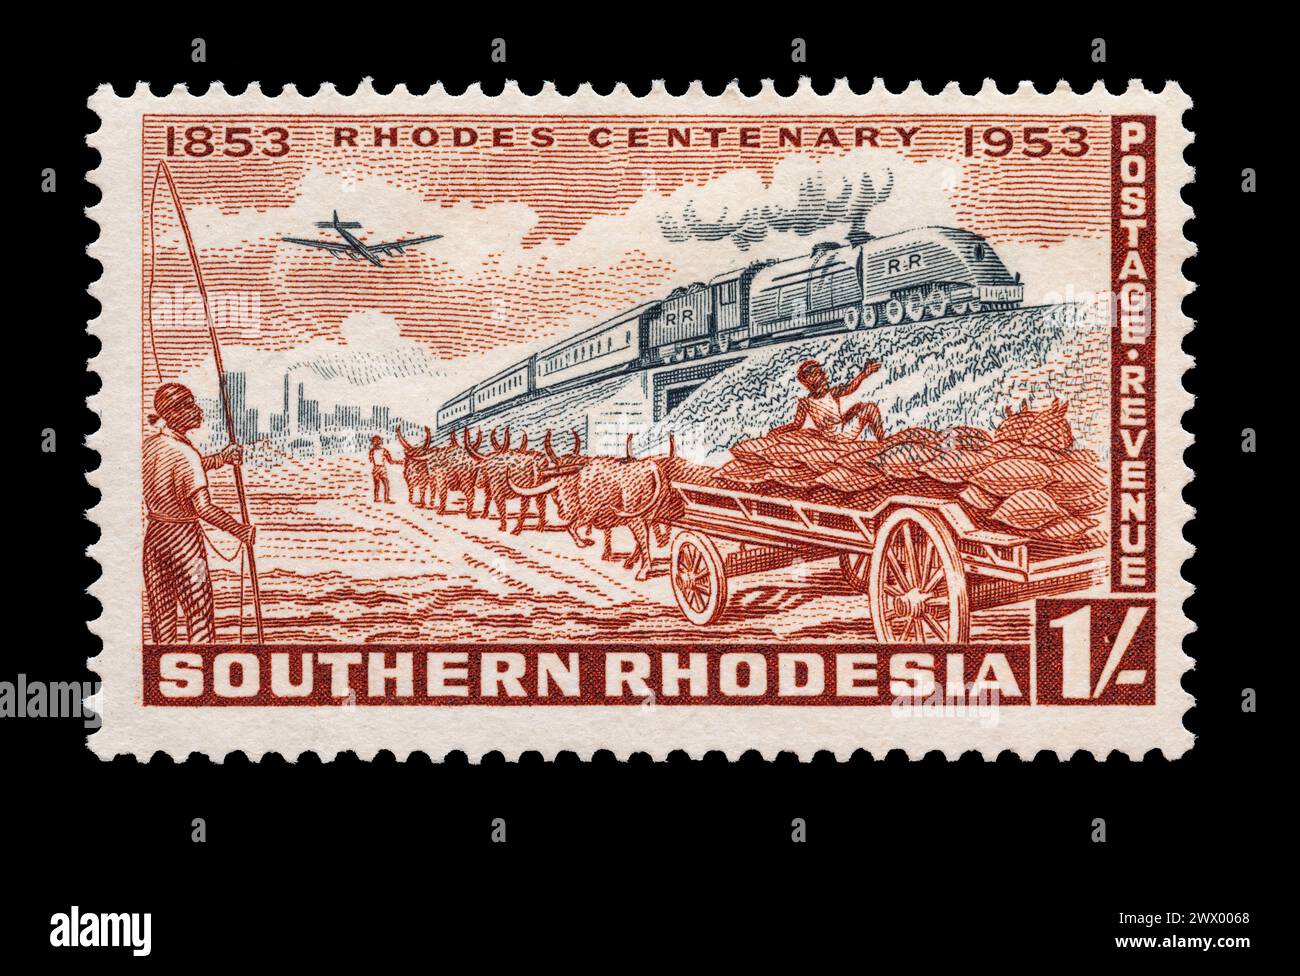 Francobollo vintage della Rhodesia meridionale intorno al 1953. Festeggiamo il centenario della nascita di Rodi. Illustrazione che mostra aeroplani, treni e carrelli agricoli. Foto Stock